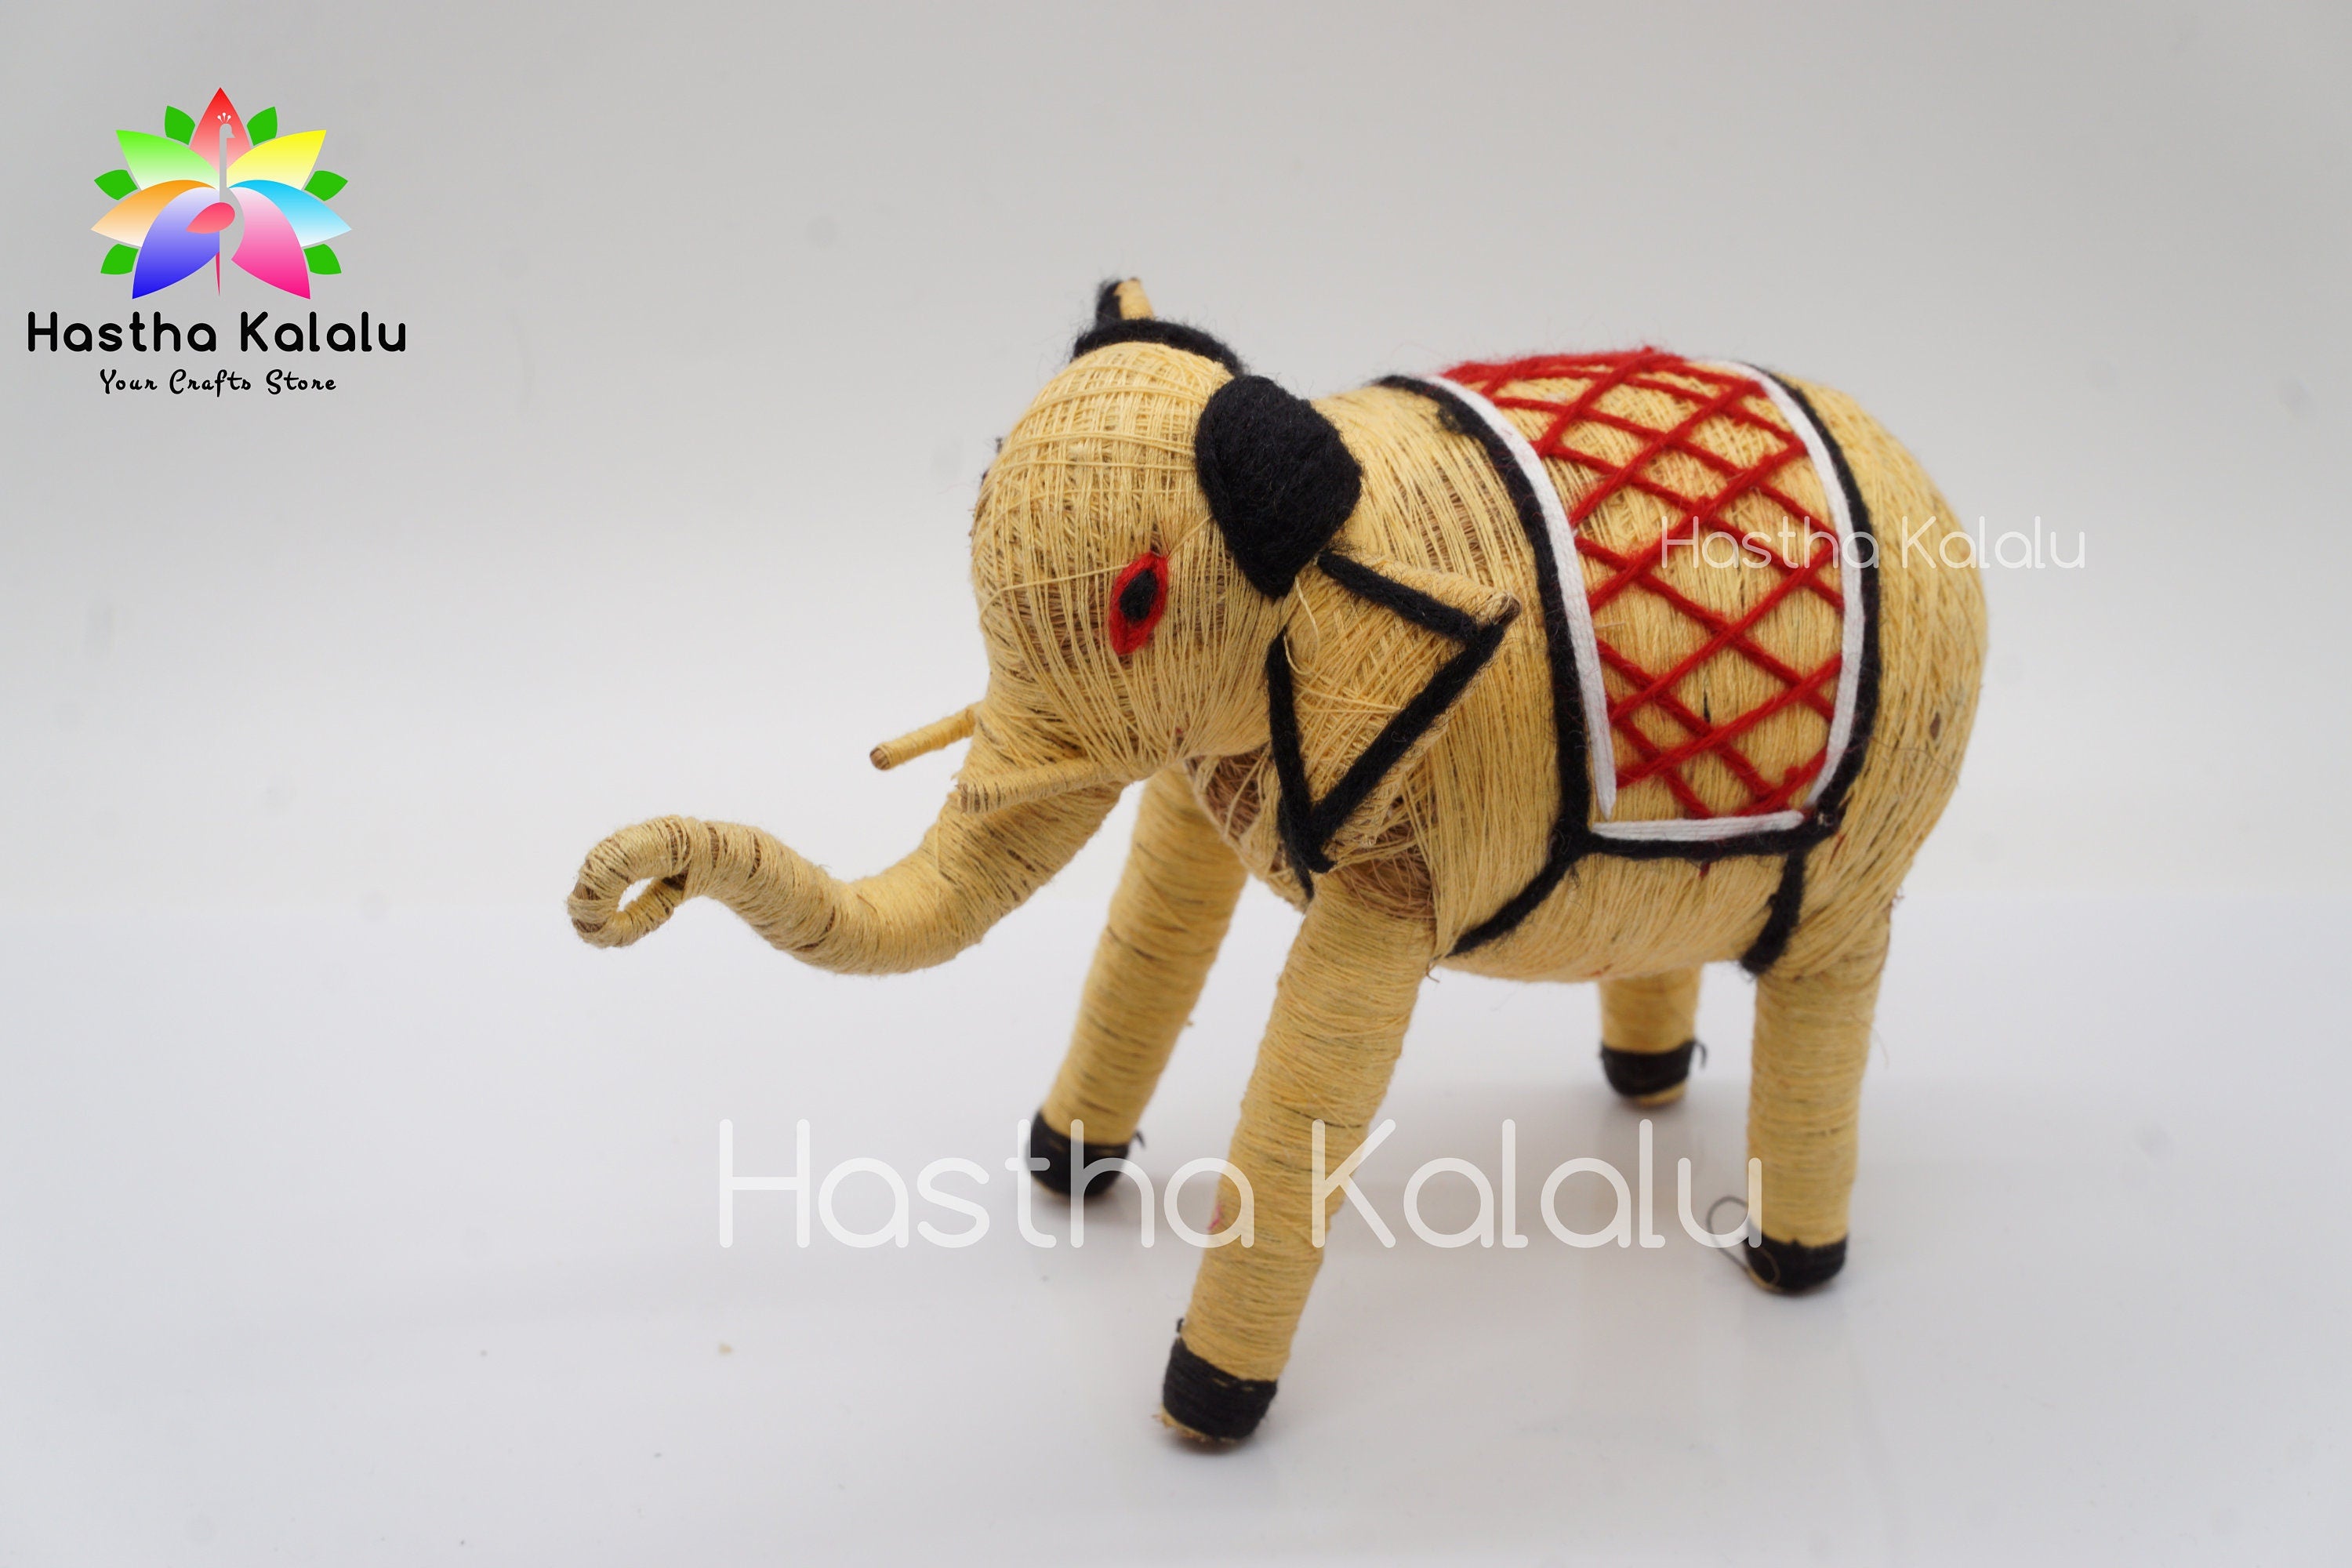 Handgefertigte Elefantenpuppe aus Kokosfaser | Kunsthandwerk aus Kokosfasern | Bio-umweltfreundliches Elefantenspielzeug